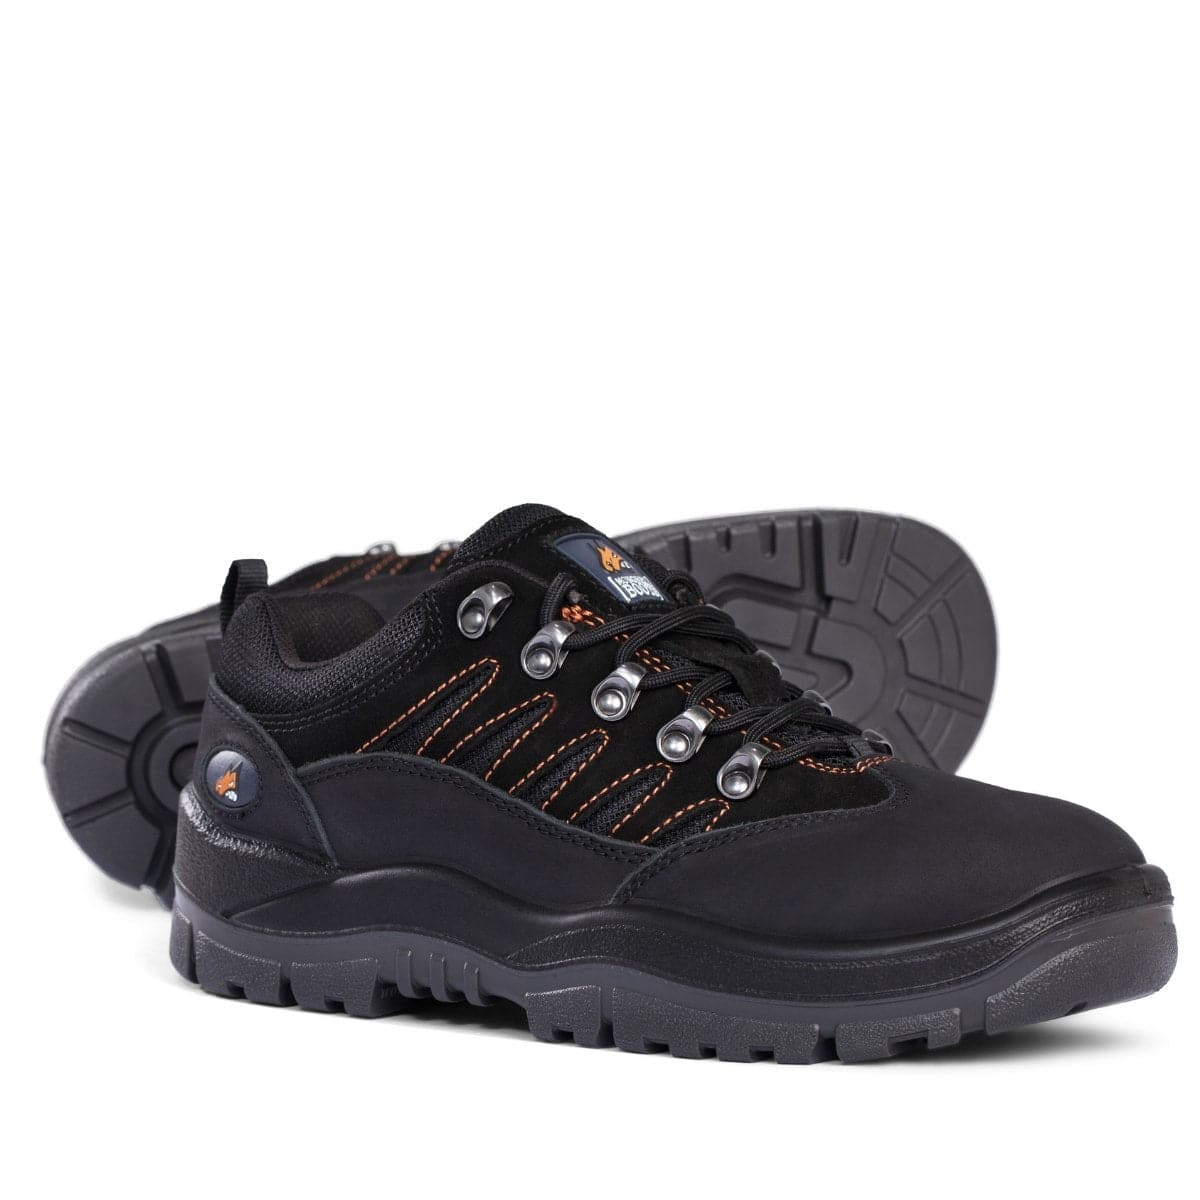 Mongrel Black-Grey Hiker Safety Shoe 390080